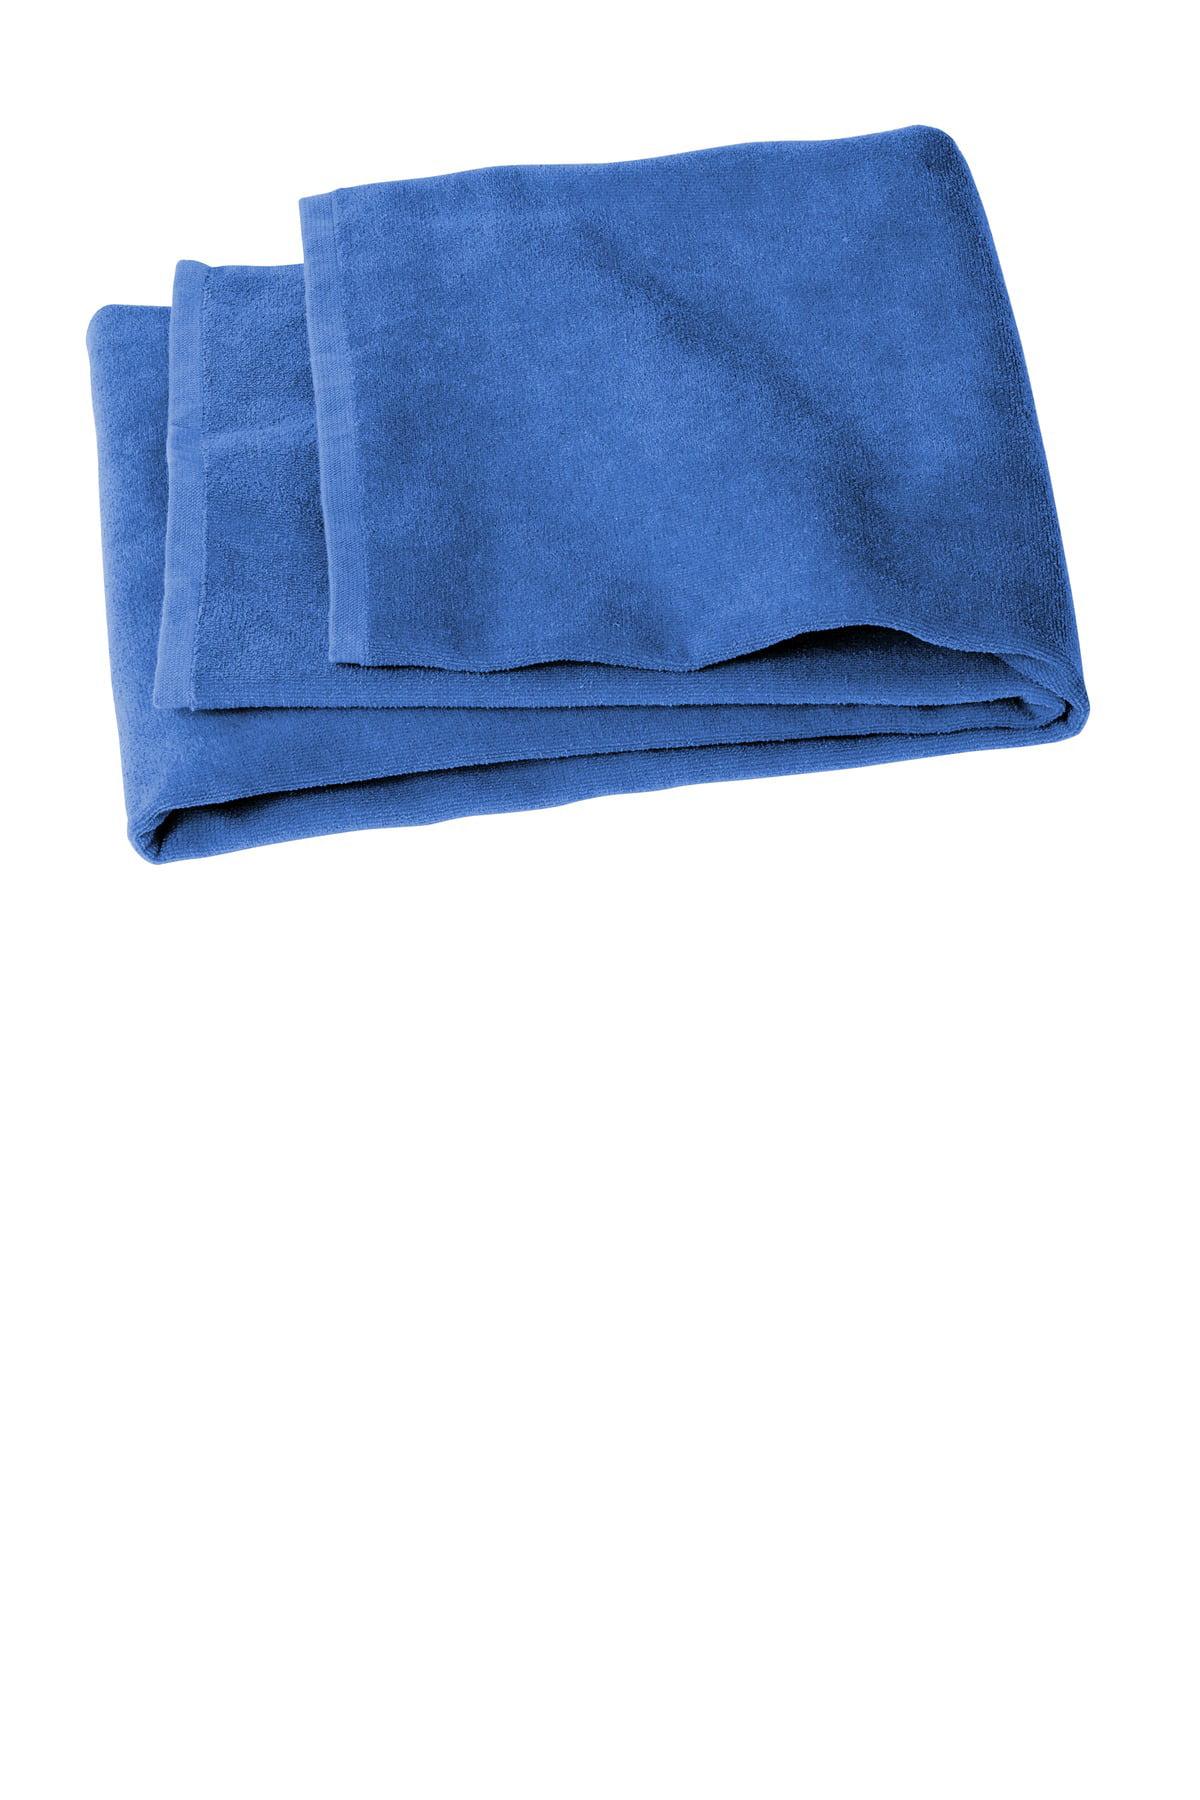 Details about   Rapport 100% Cotton "Royal Velvet" 2 Pack Bath Sheets Towel 5 Colours Available 